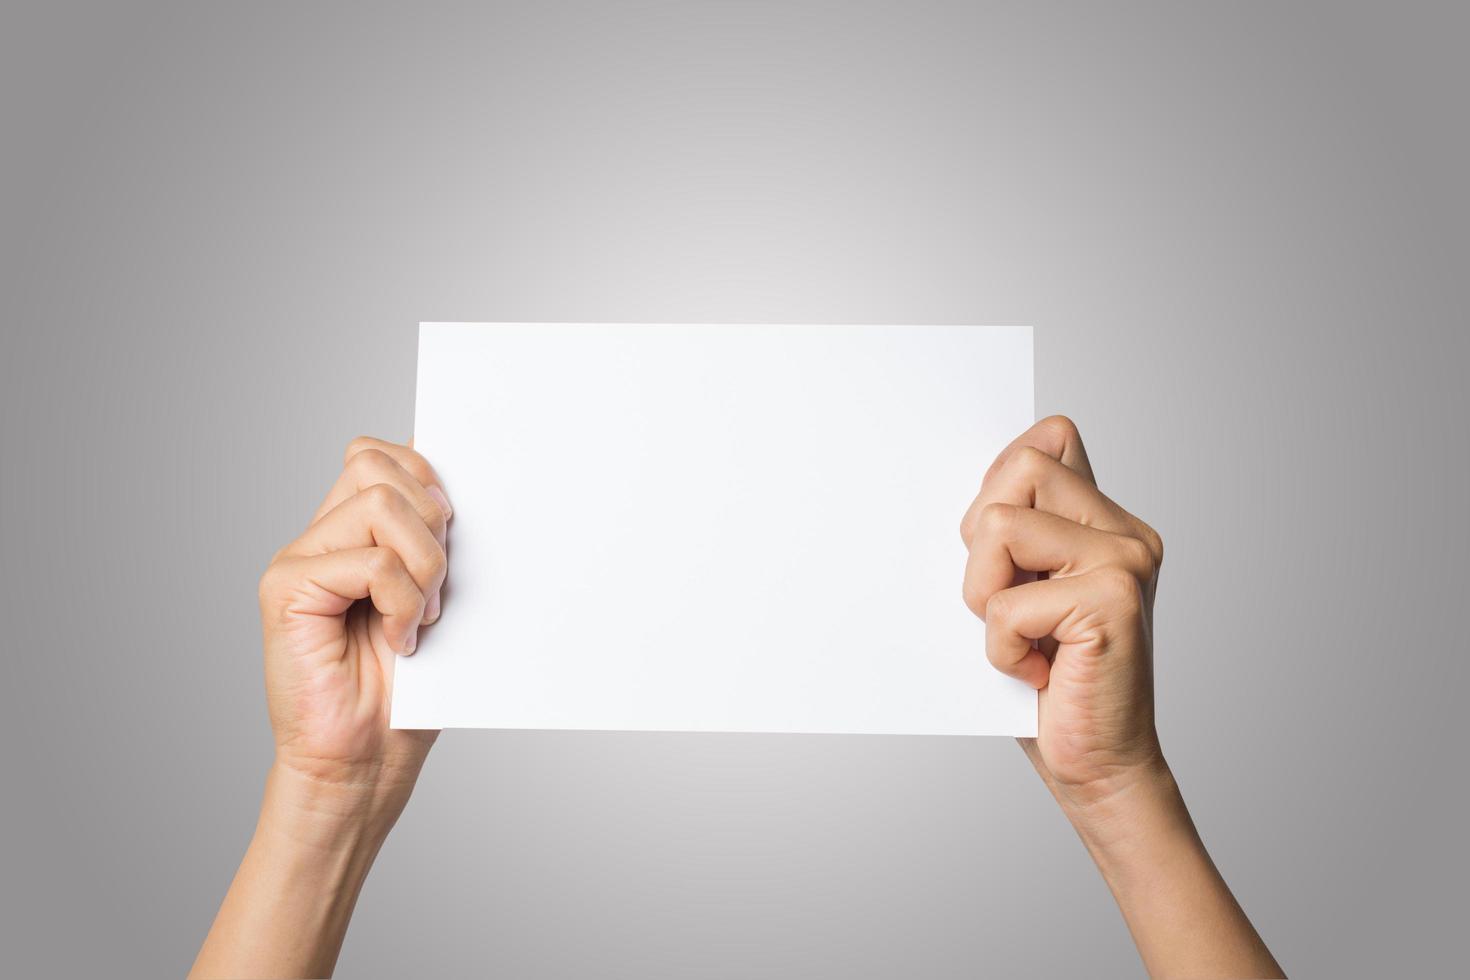 Nahaufnahme der Hand einer Frau, die leeres Papier lokalisiert auf weißem Hintergrund hält foto